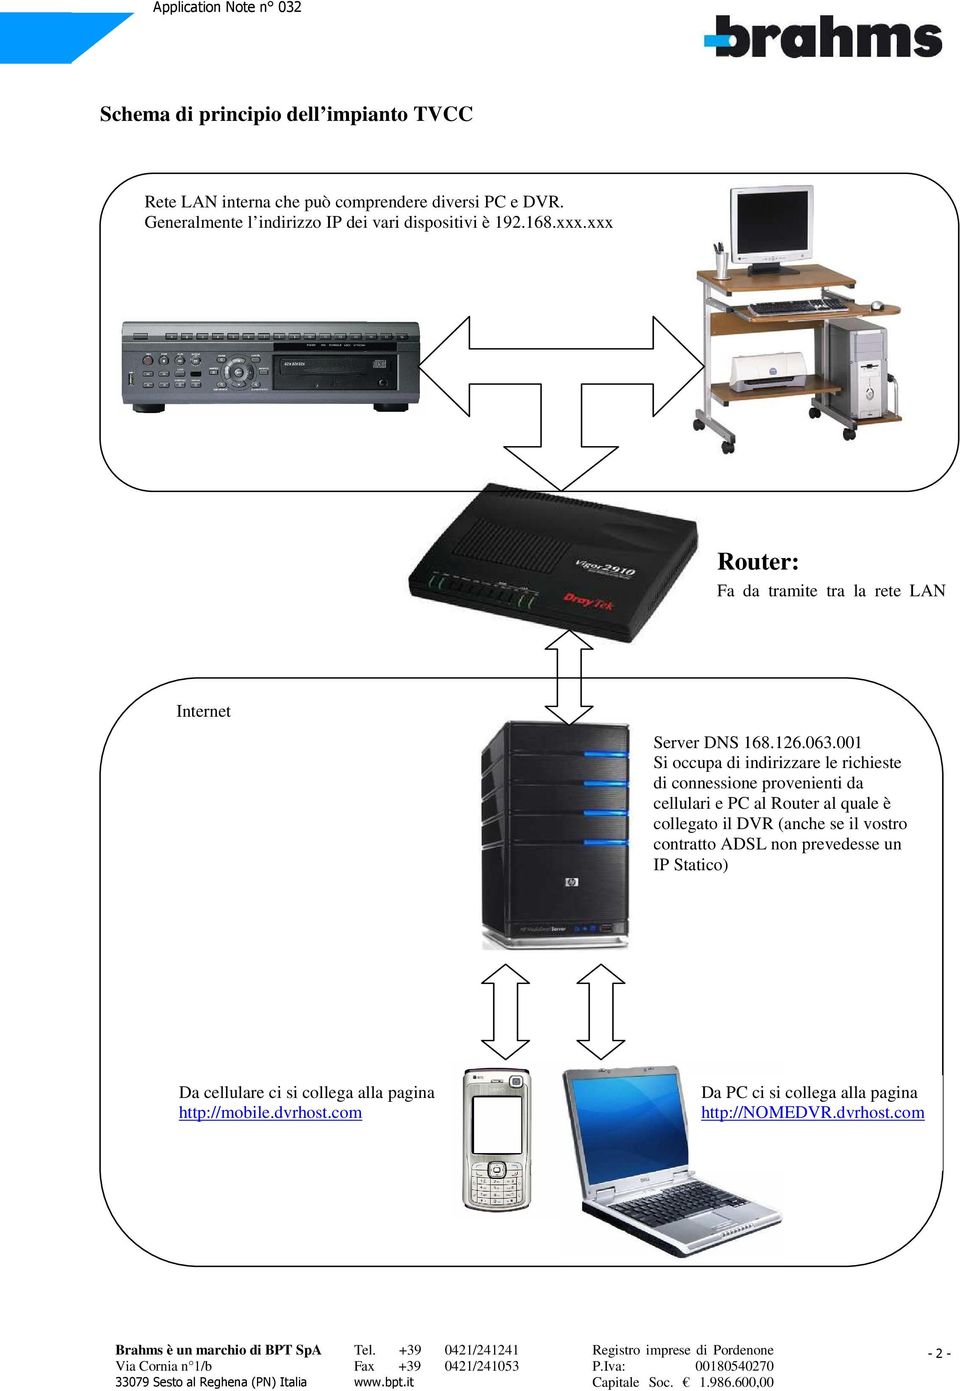 xxx Router: Fa da tramite tra la rete LAN interna e la rete Internet esterna Internet Server DNS 168.126.063.